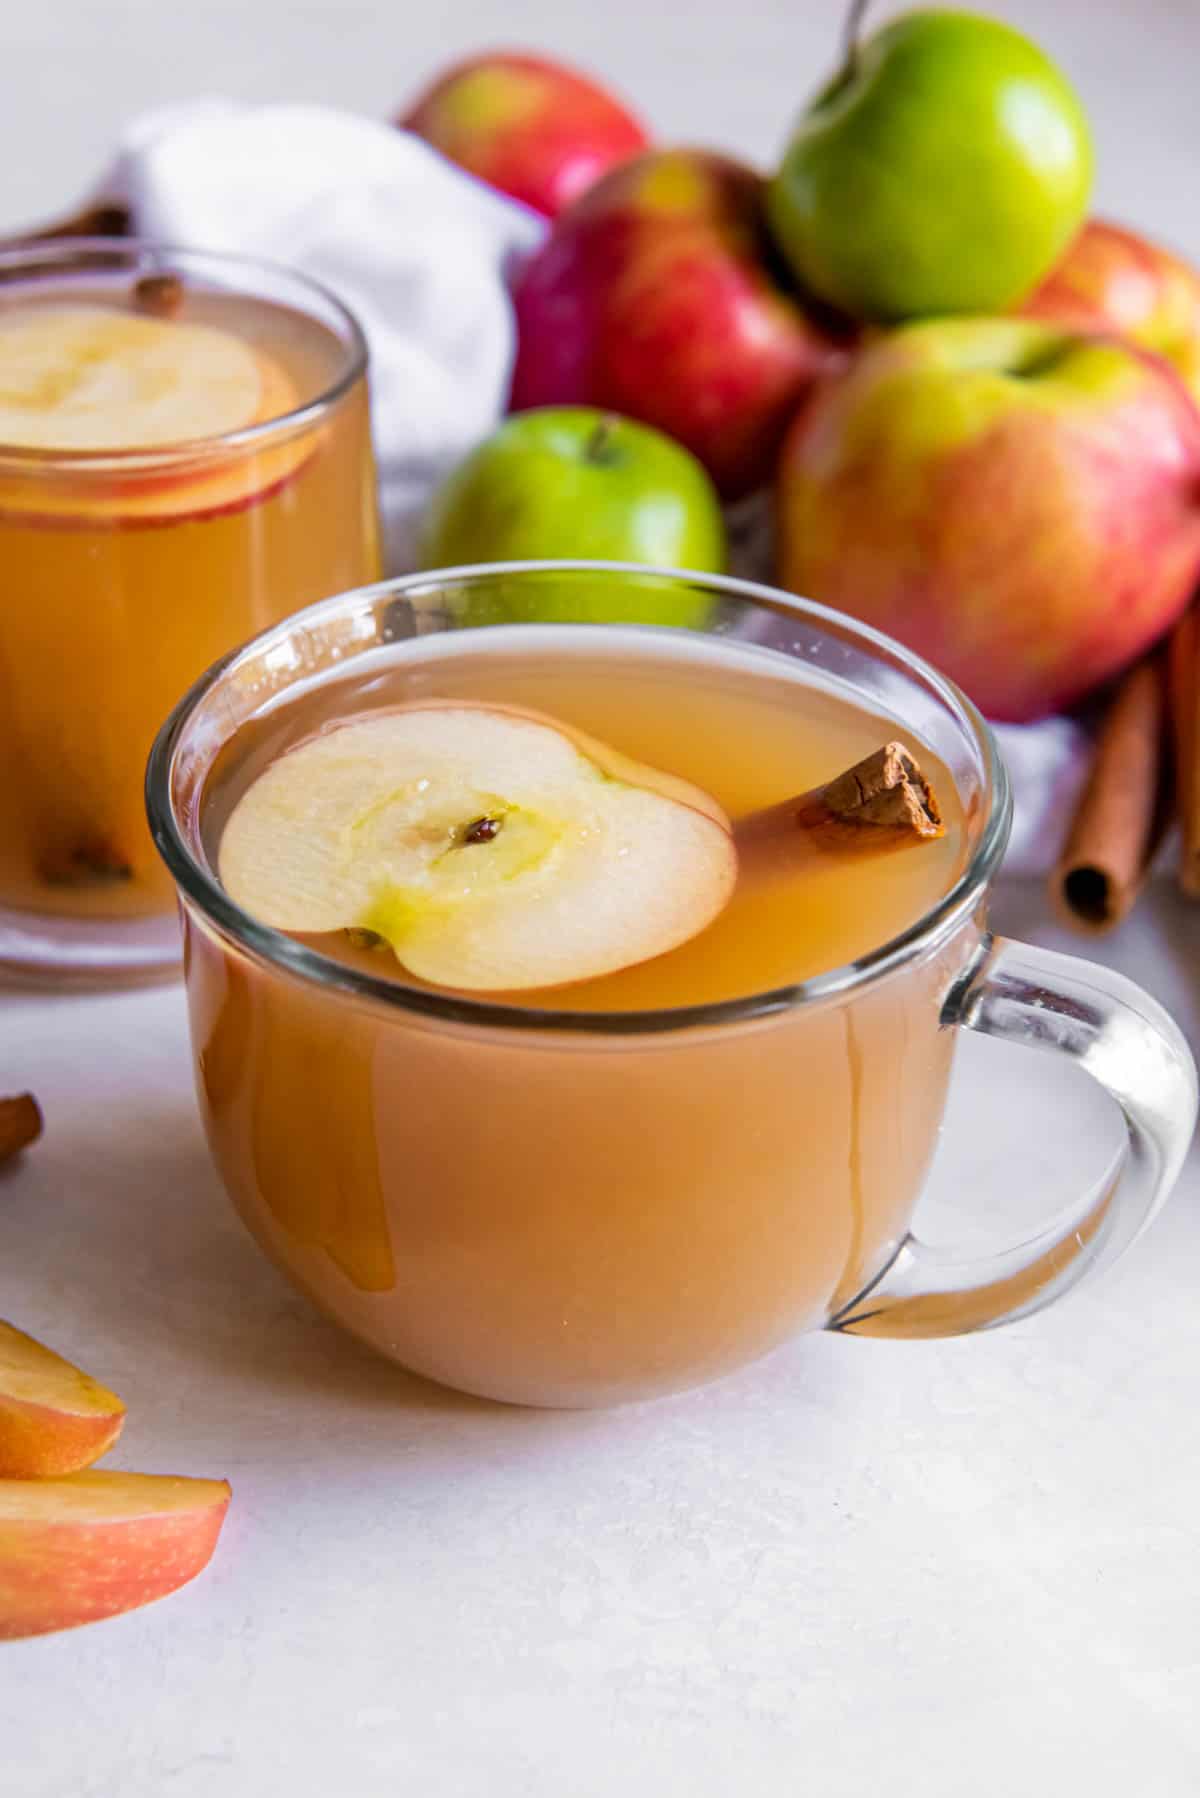 Deux verres de cidre de pomme posés sur un comptoir blanc. Une tranche de pomme et un bâton de cannelle se trouvent dans le verre de cidre.